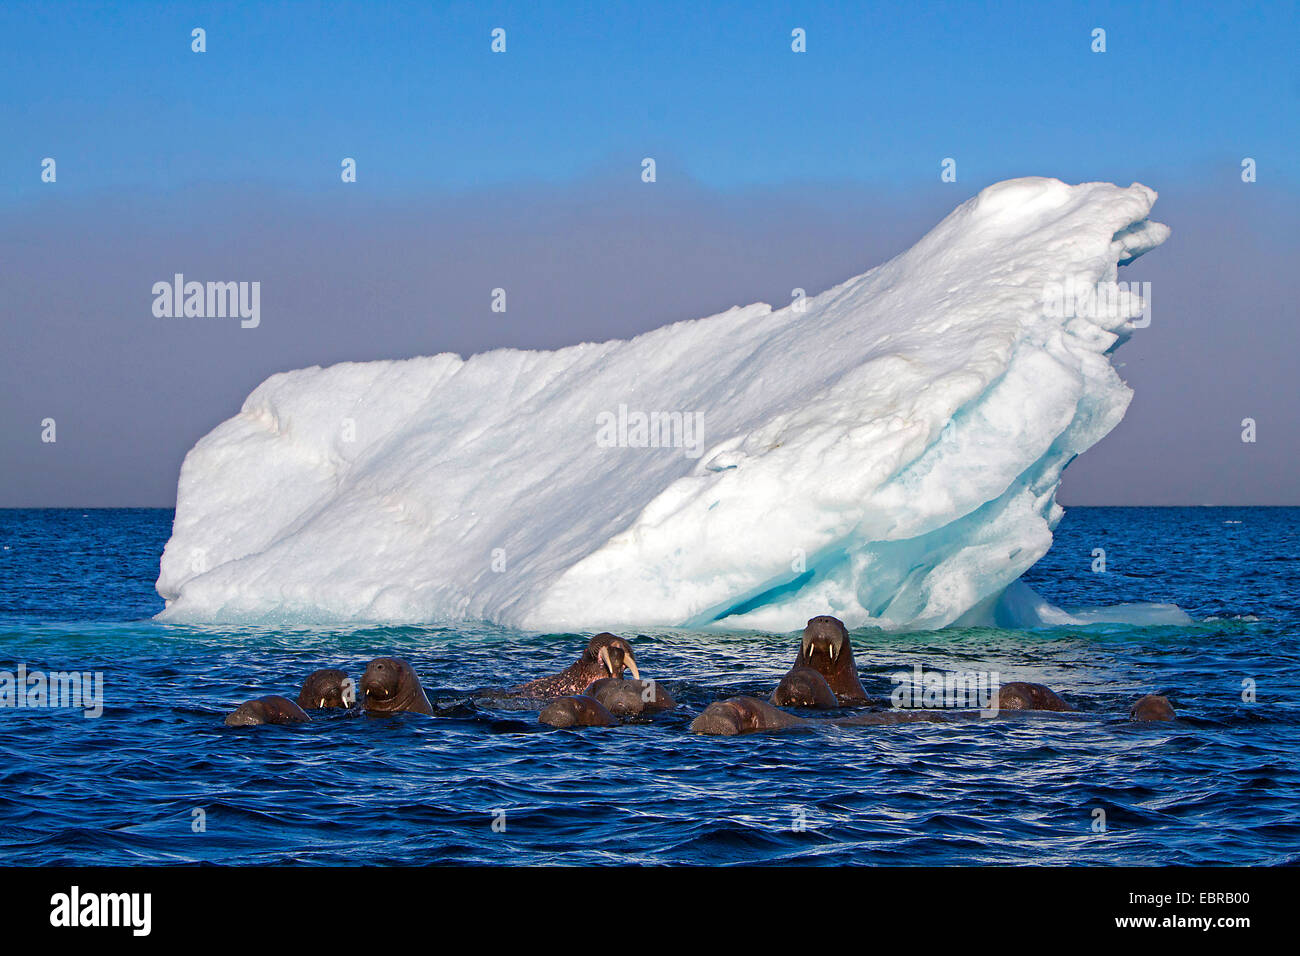 walrus (Odobenus rosmarus), walruses in the Arctic Ocean with iceberg, Norway, Svalbard Stock Photo